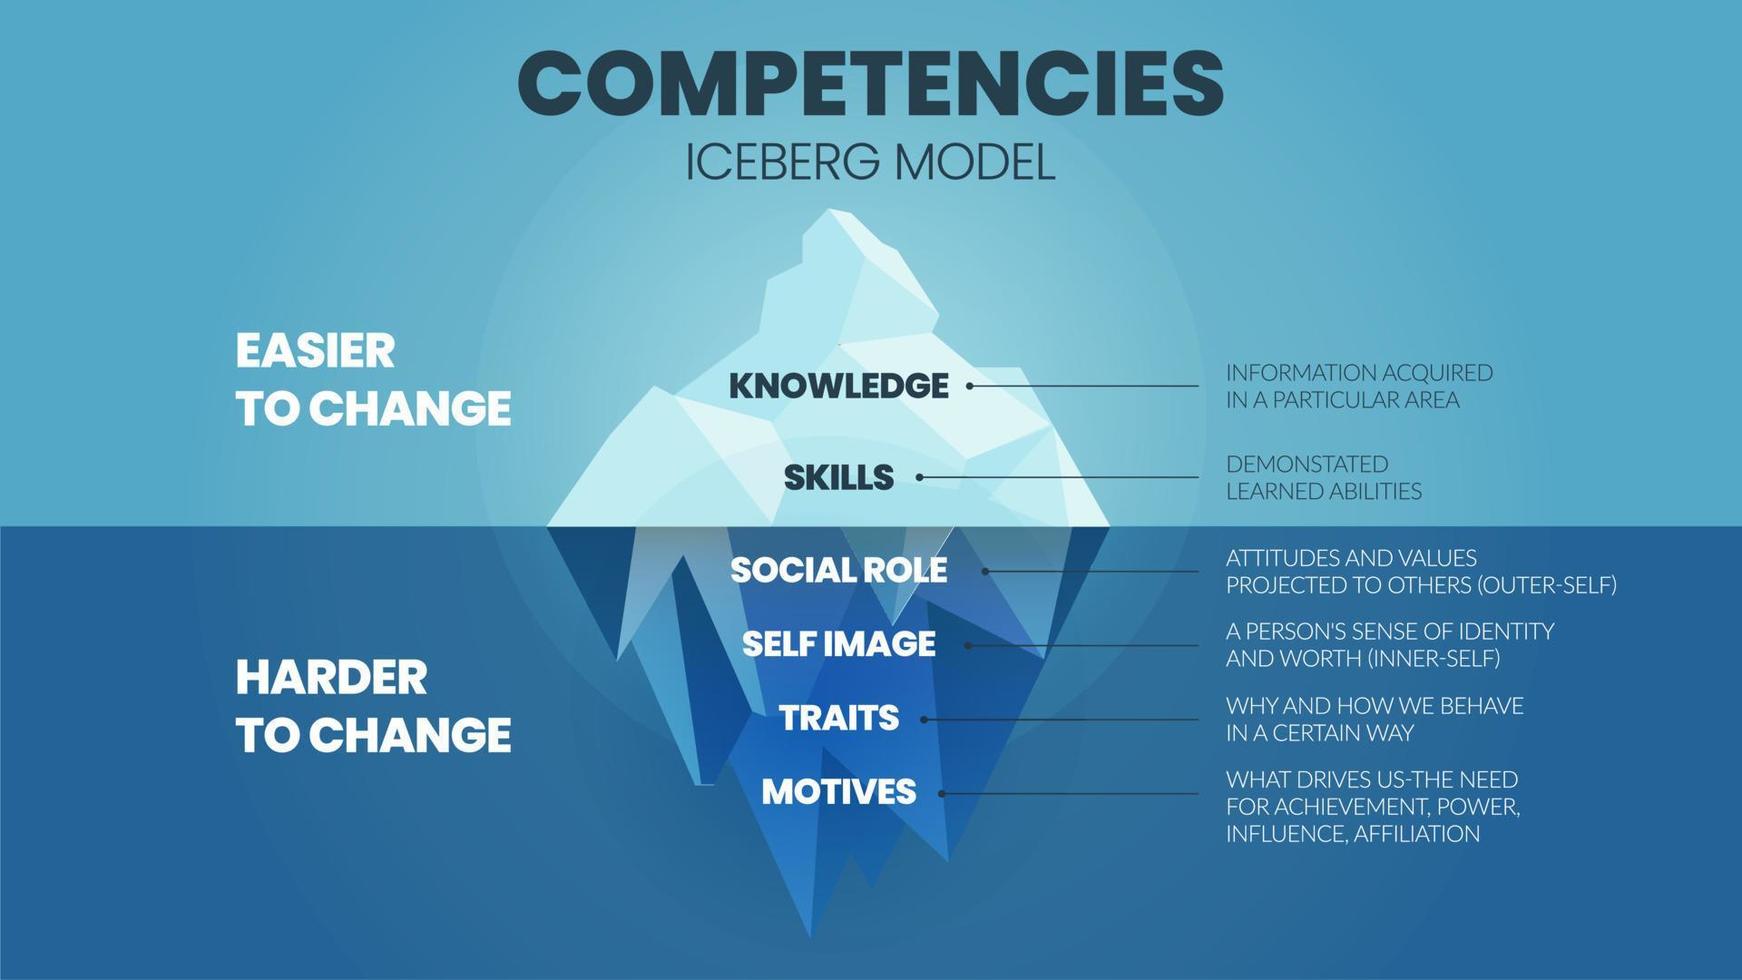 en vektorillustration av kompetenser isbergsmodell hrd koncept har 2 delar av medarbetarens kompetensförbättring övre är kunskap och skicklighet lätt att ändra men attribut under vattnet är svårare vektor